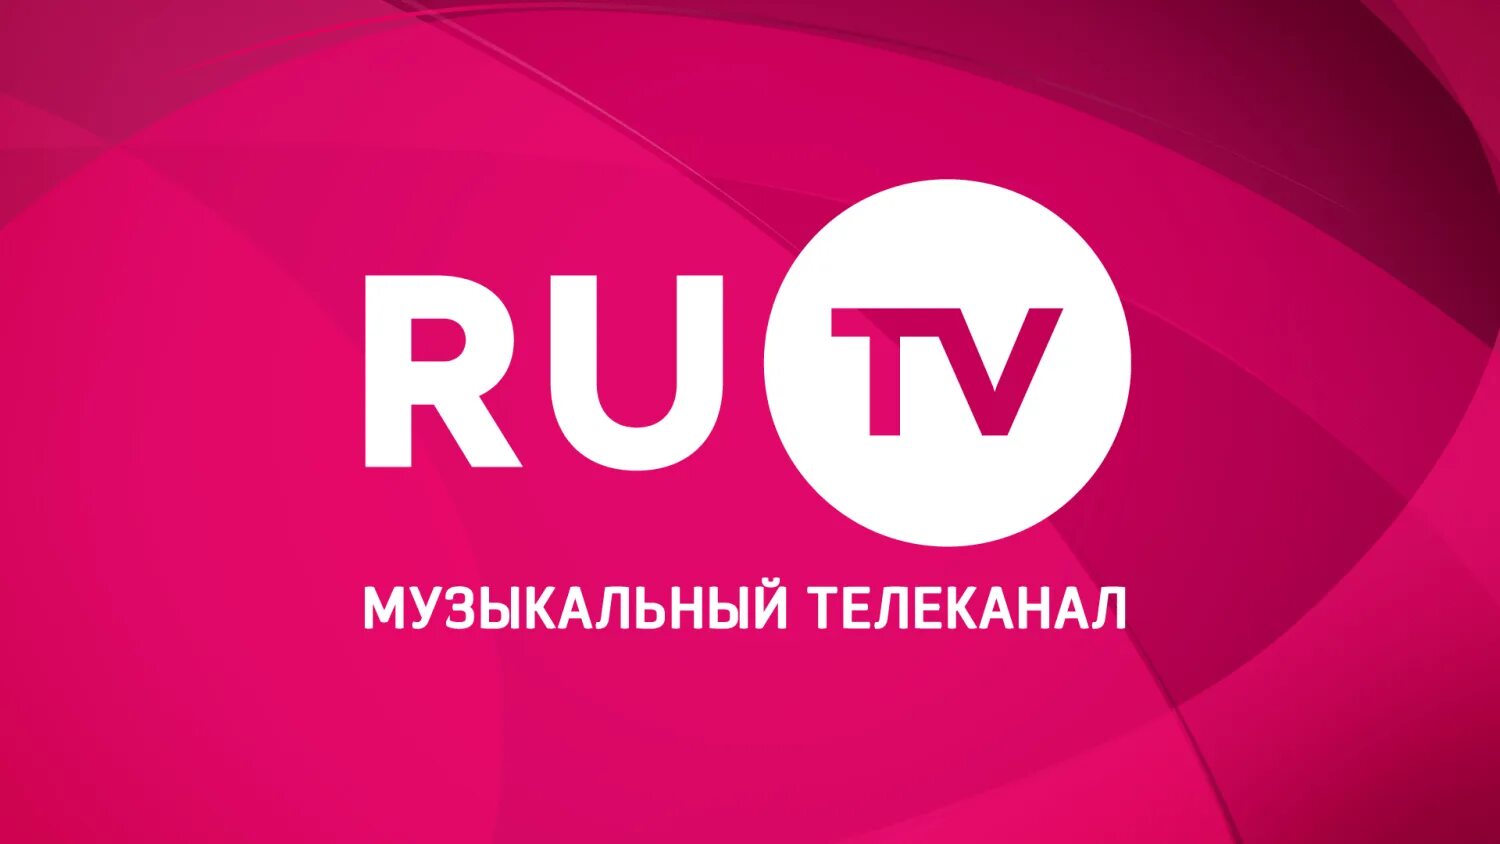 Qfl tv. Ру ТВ. Ру ТВ логотип. Телеканал ru TV. Ру ТВ музыкальный канал.